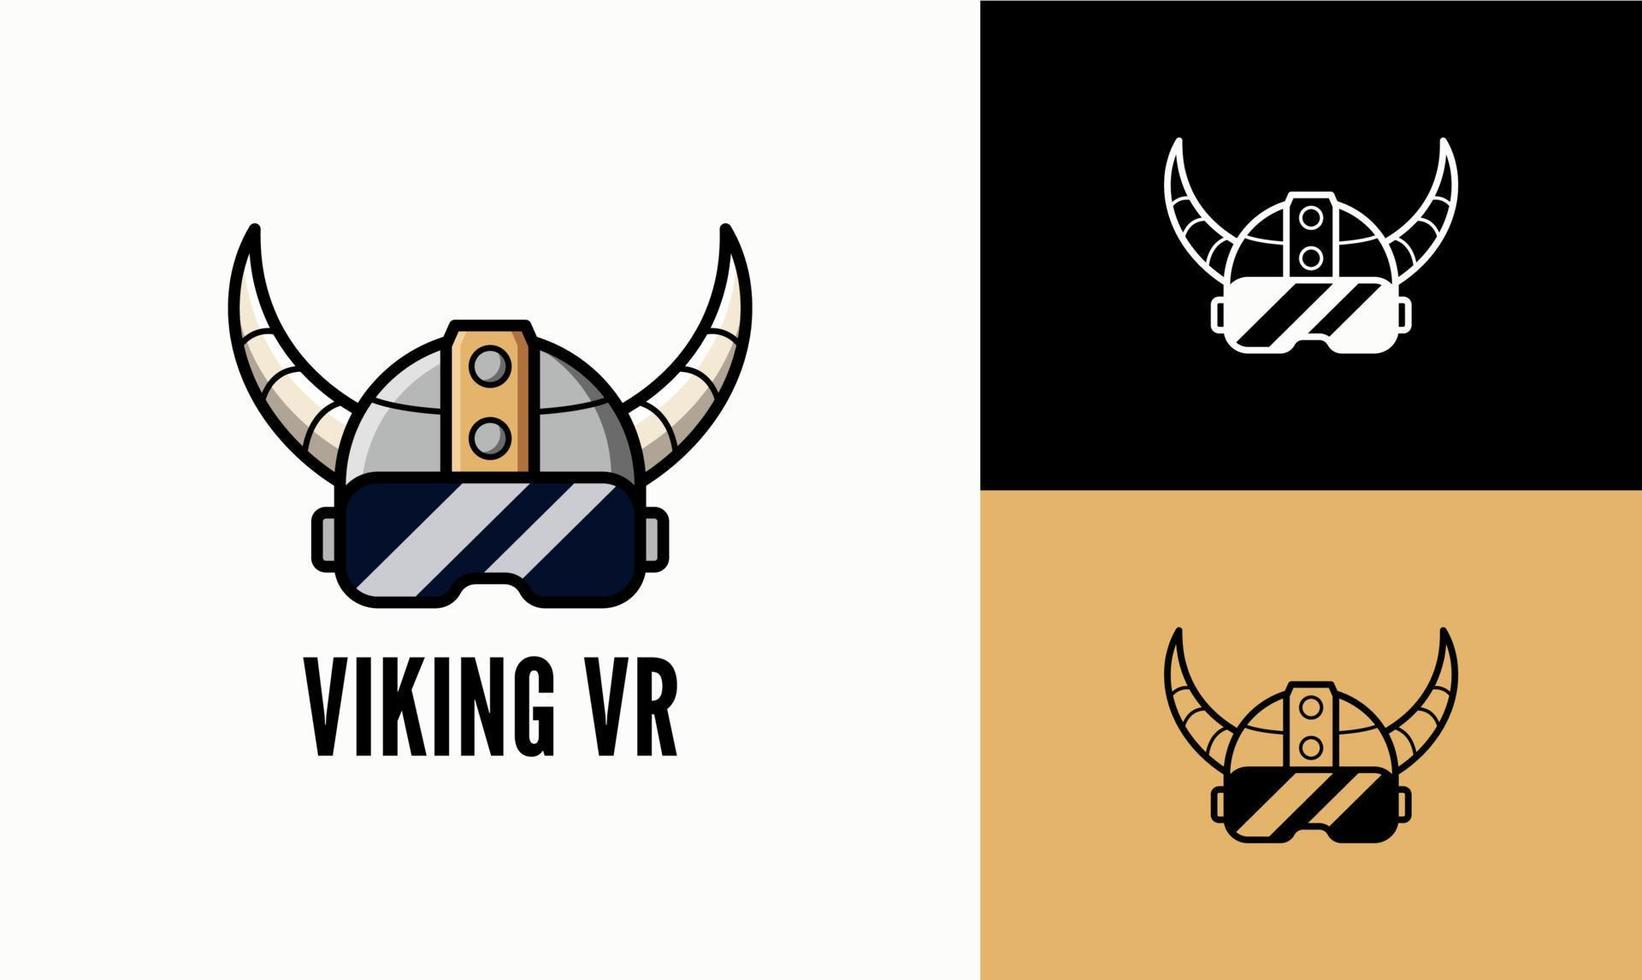 Le logo du casque viking et le vr conviennent aux logos de jeu esport. casque ancien et logo vvr moderne. vecteur de casque viking.